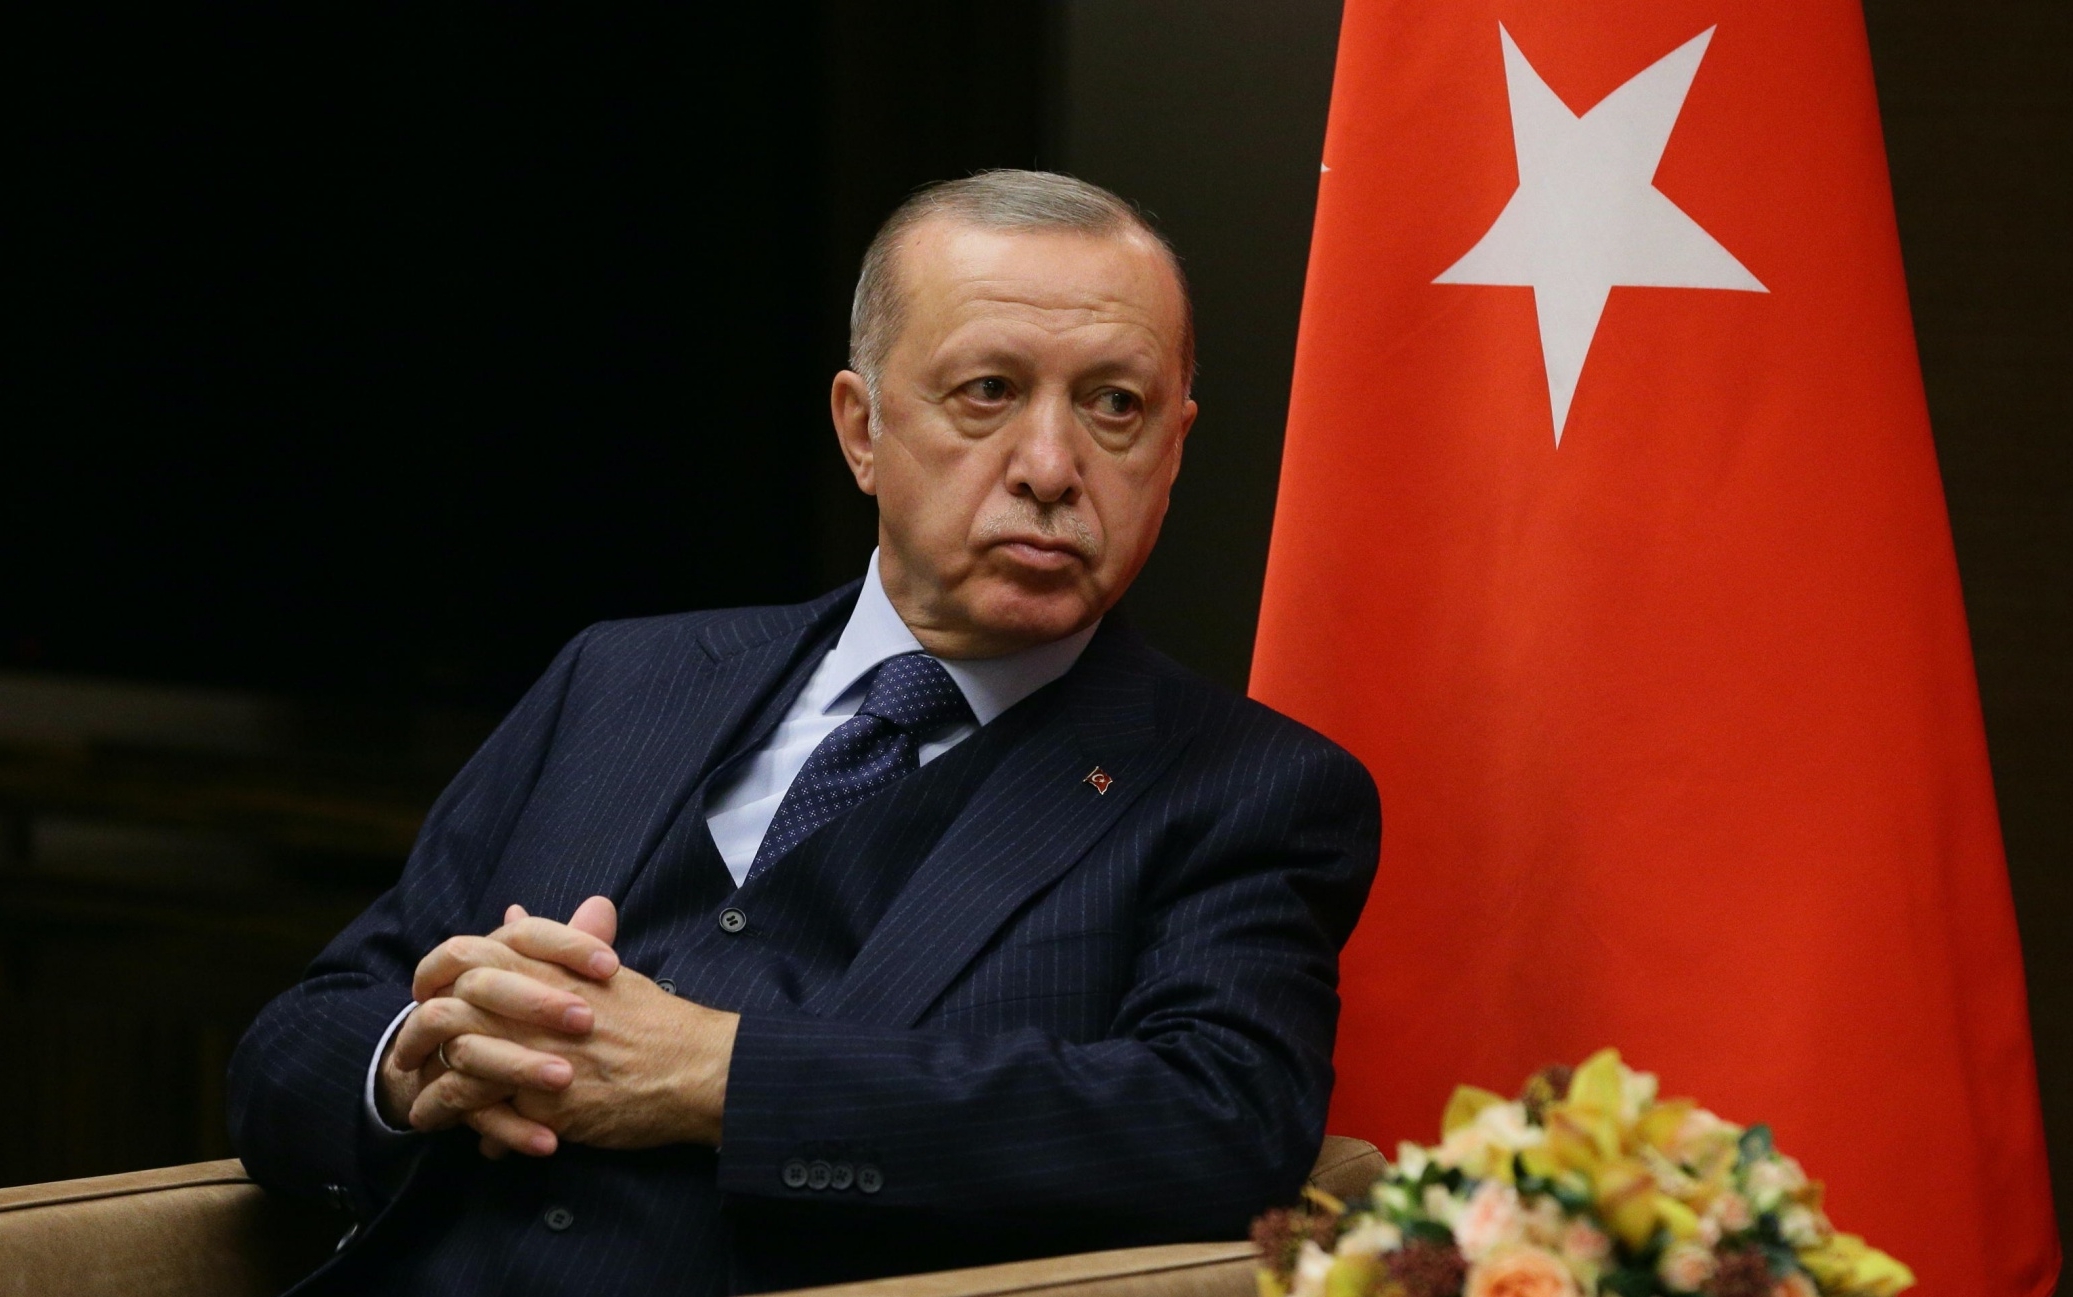 In Turchia l'iper-inflazione inchioda il sultano Erdogan